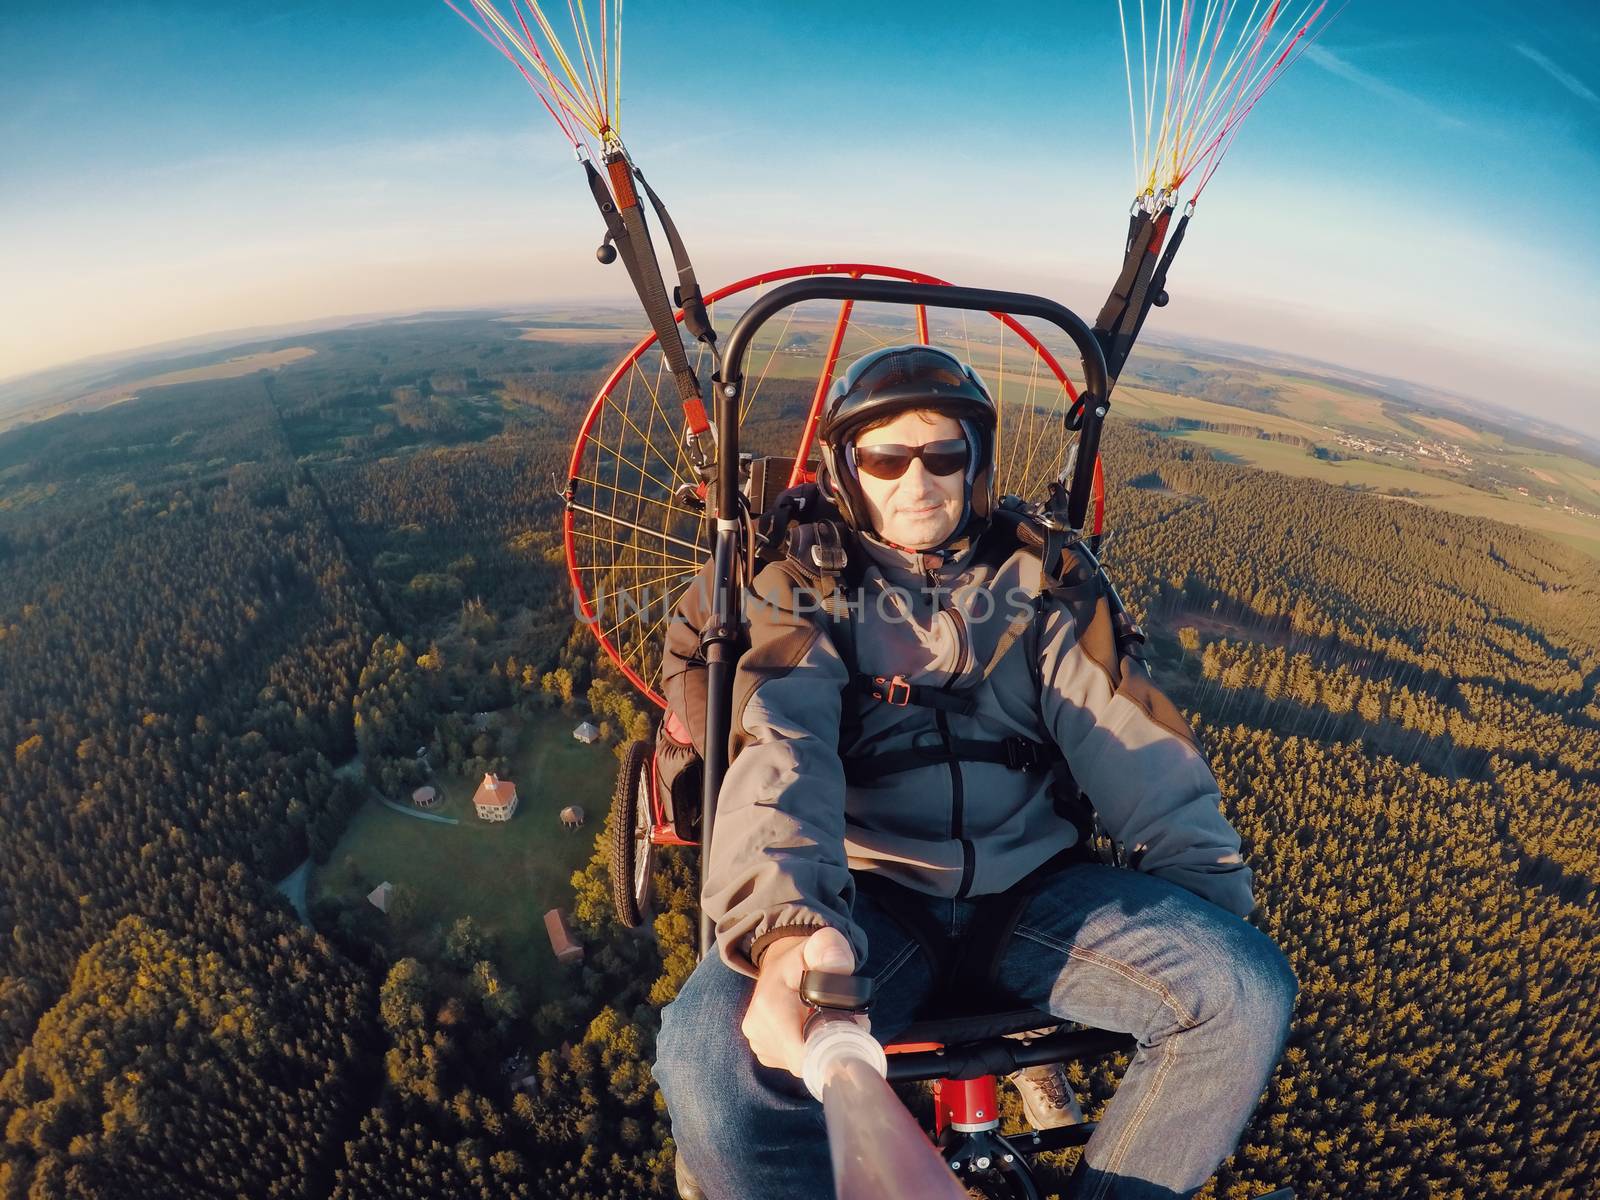 Powered paragliding tandem flight by artush